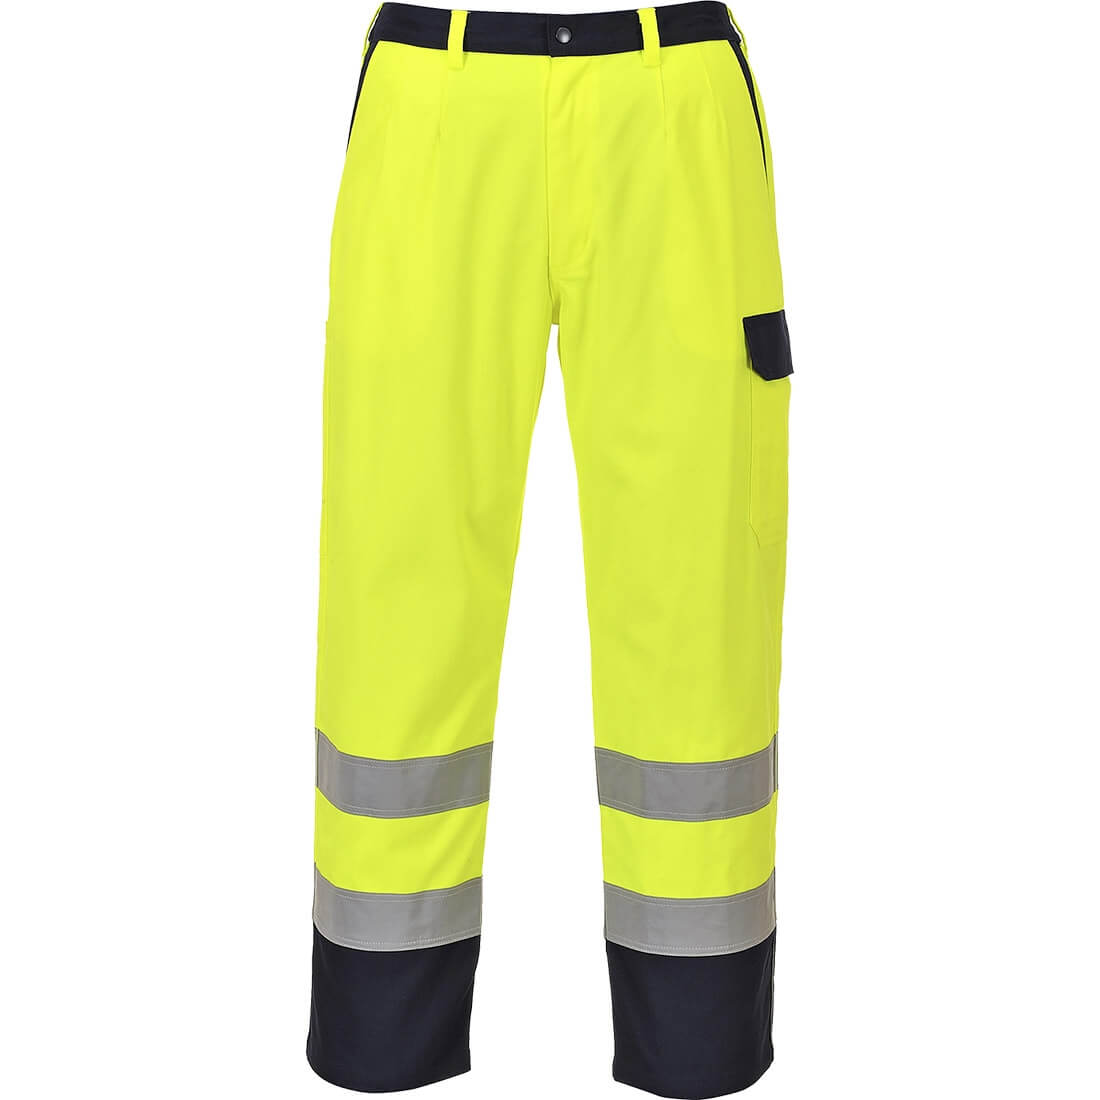 Pantalon de alta visibilidad Bizflame Pro - Ropa de protección